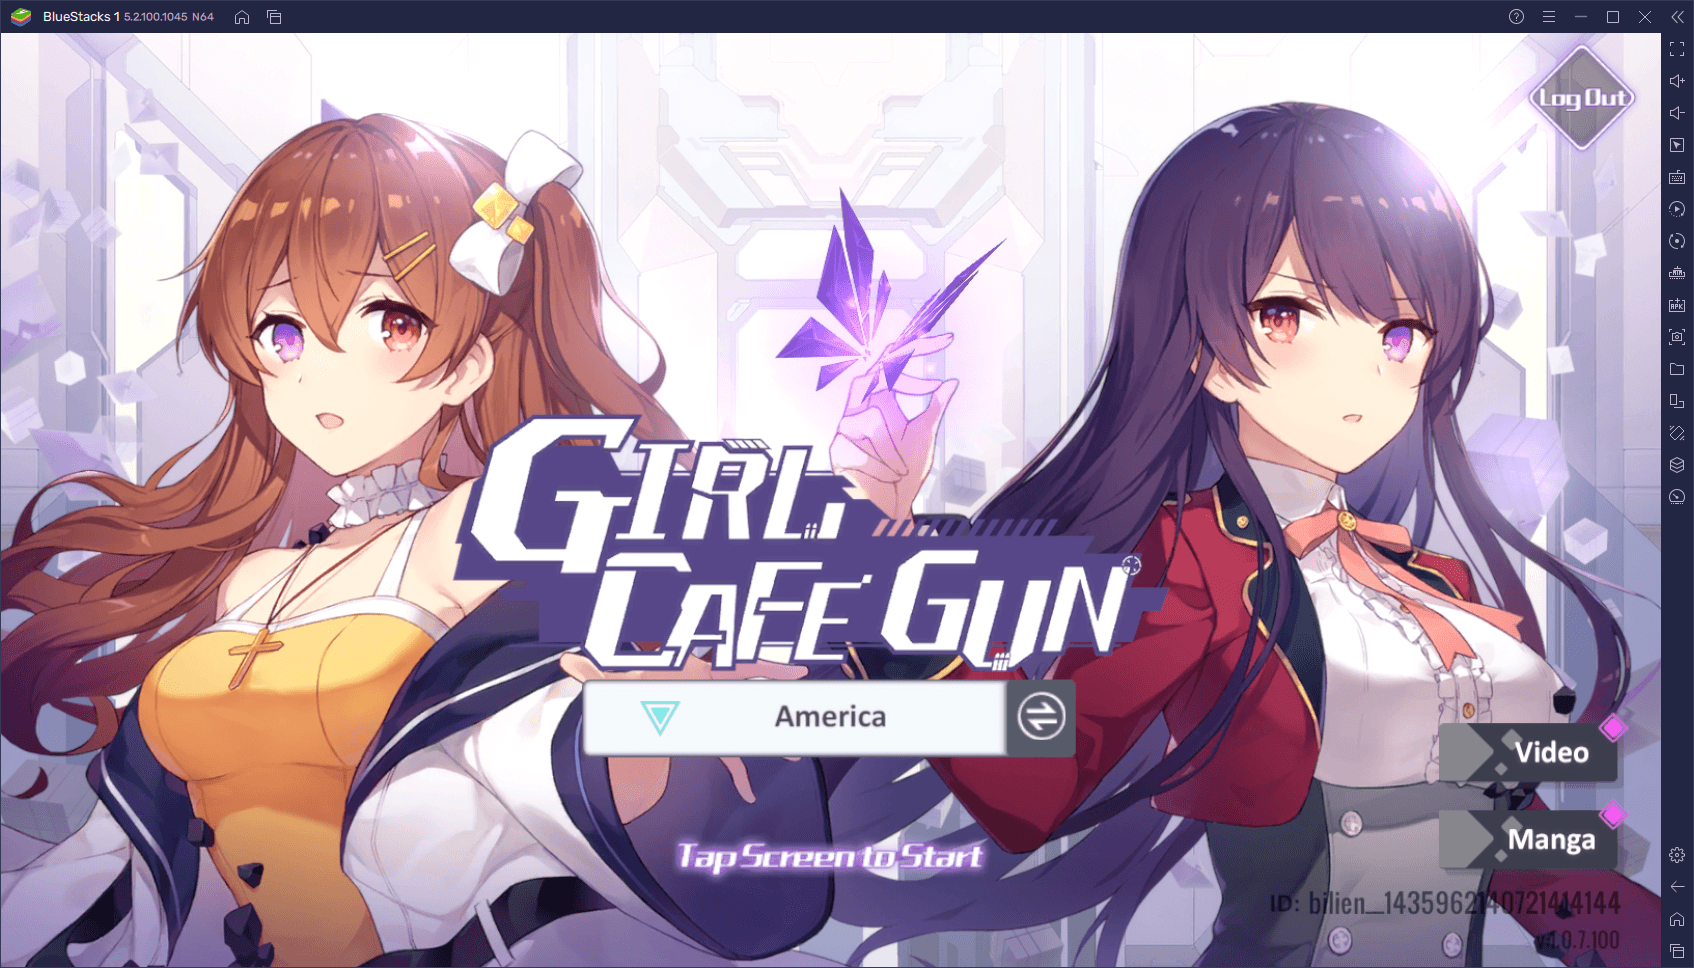 Girl Cafe Gun Reroll Guide - Should You Reroll in Girl Cafe Gun?